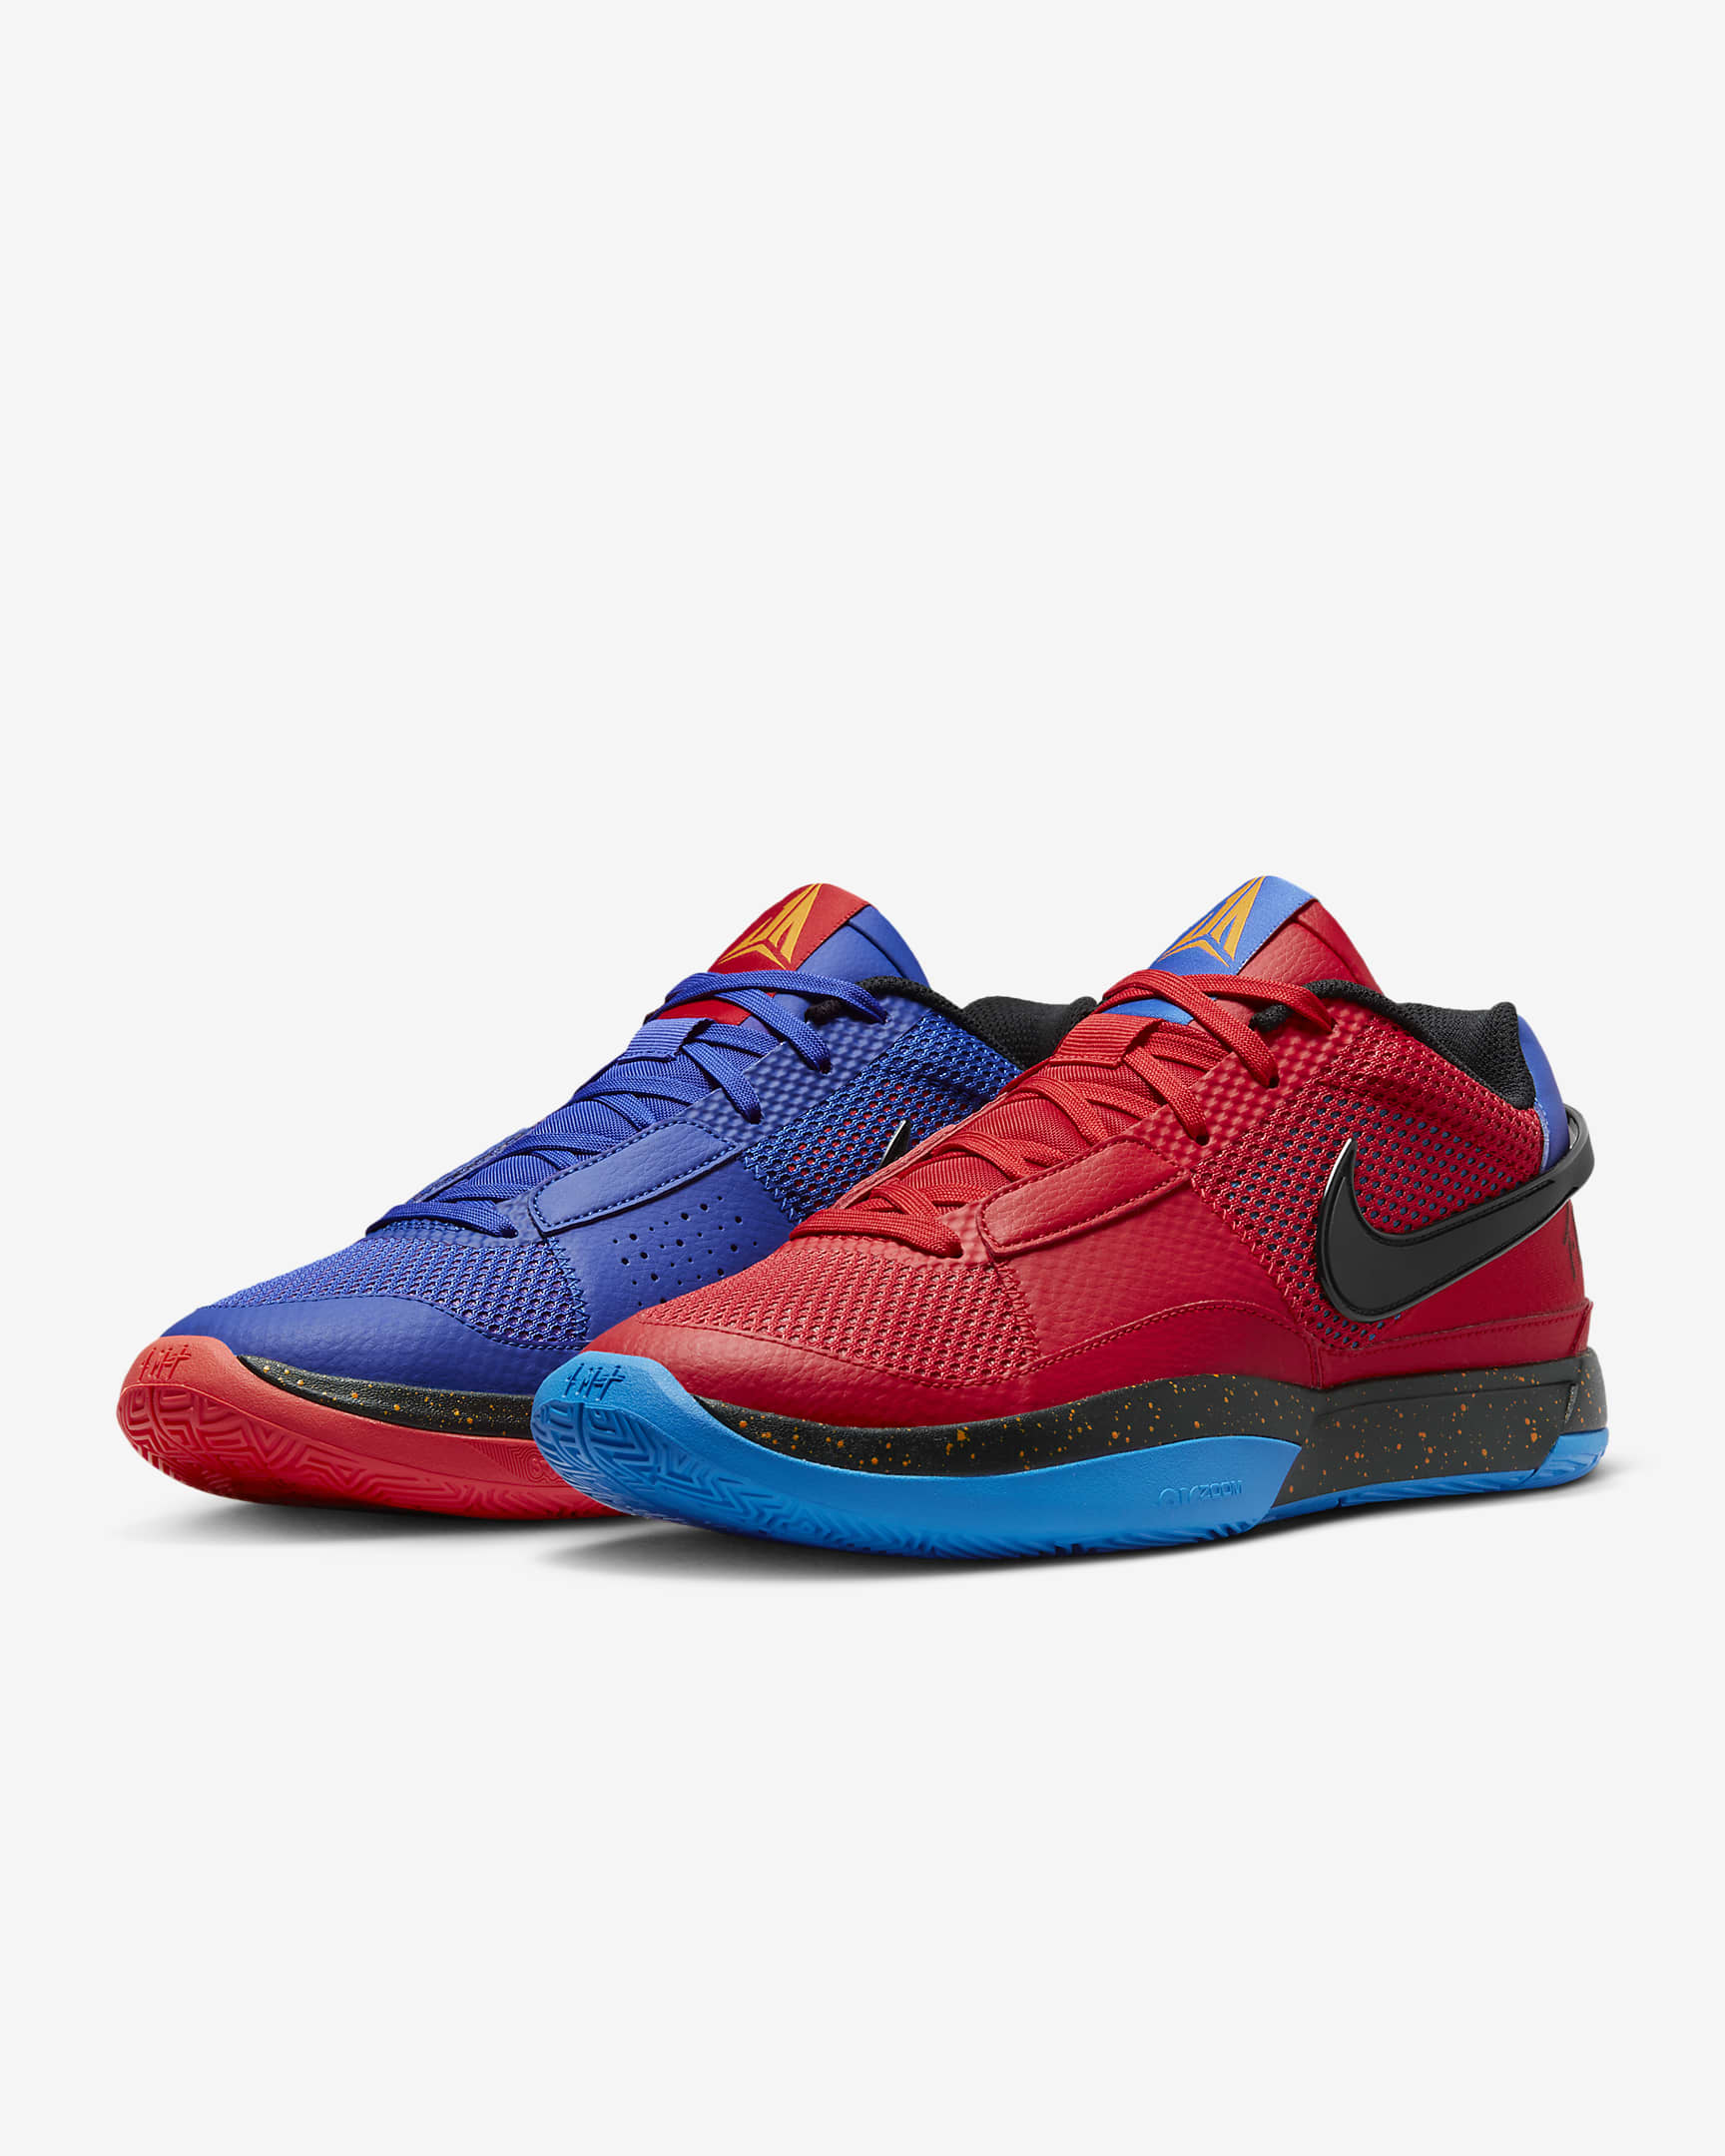 JA 1 EP Basketball Shoes. Nike PH